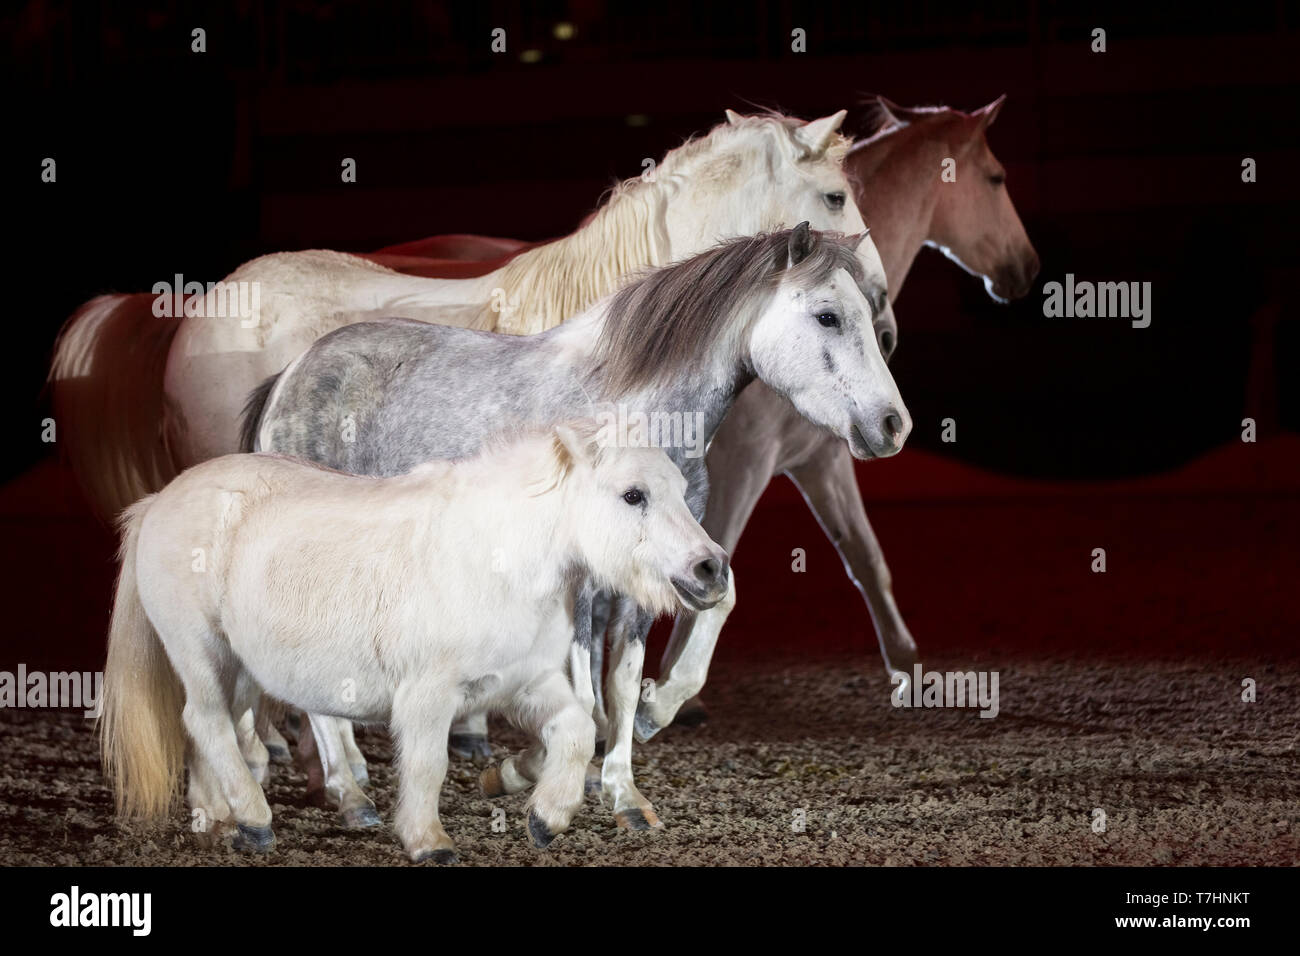 Jean-françois Pignon mostrando una libertad doma con caballos grises Foto de stock